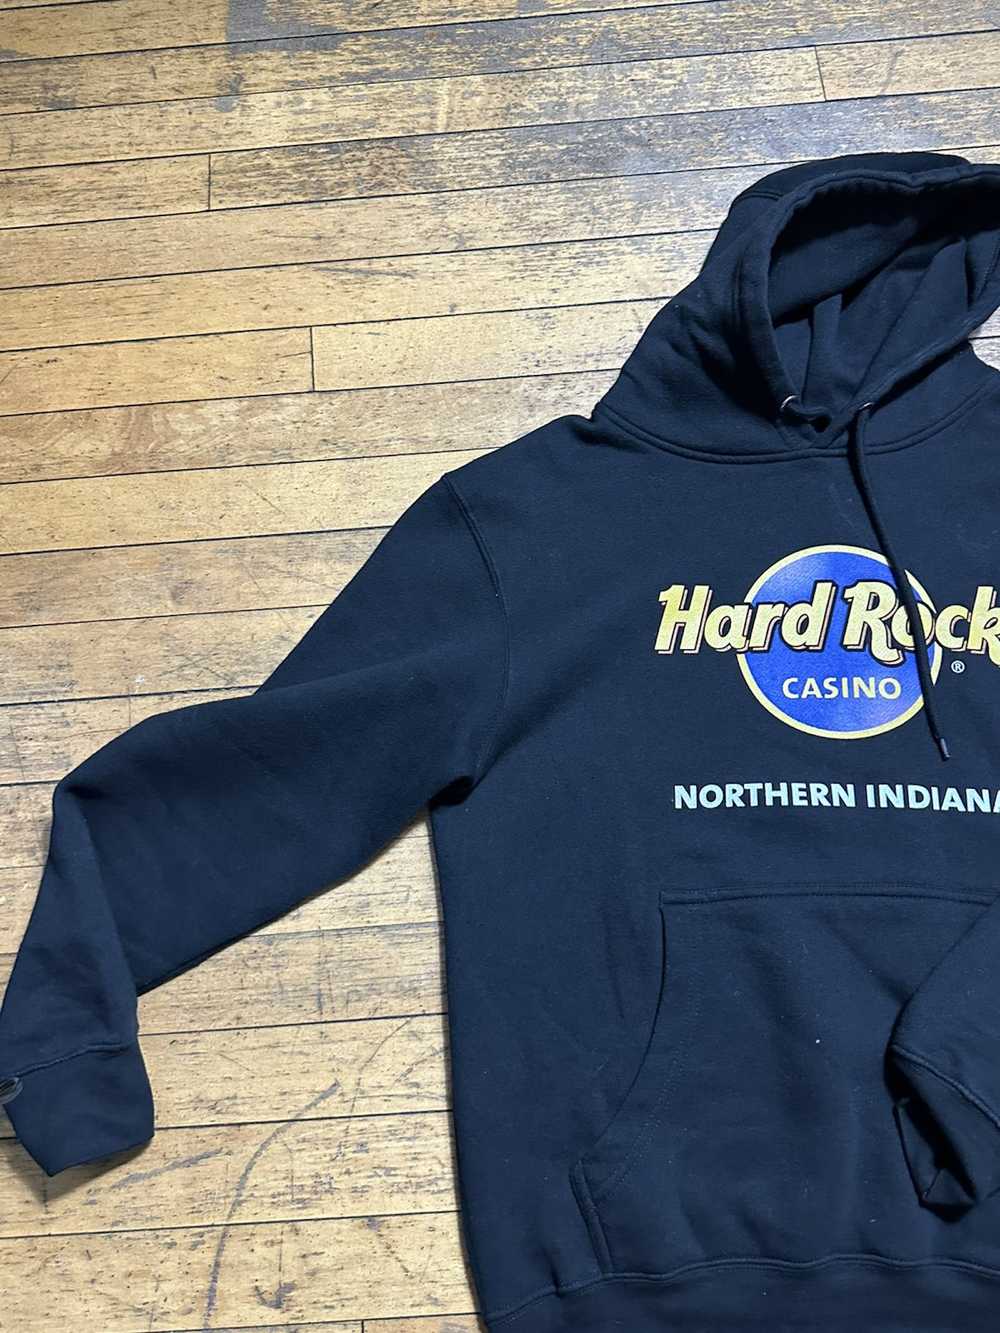 Hard Rock Cafe hard rock hoodie - image 1